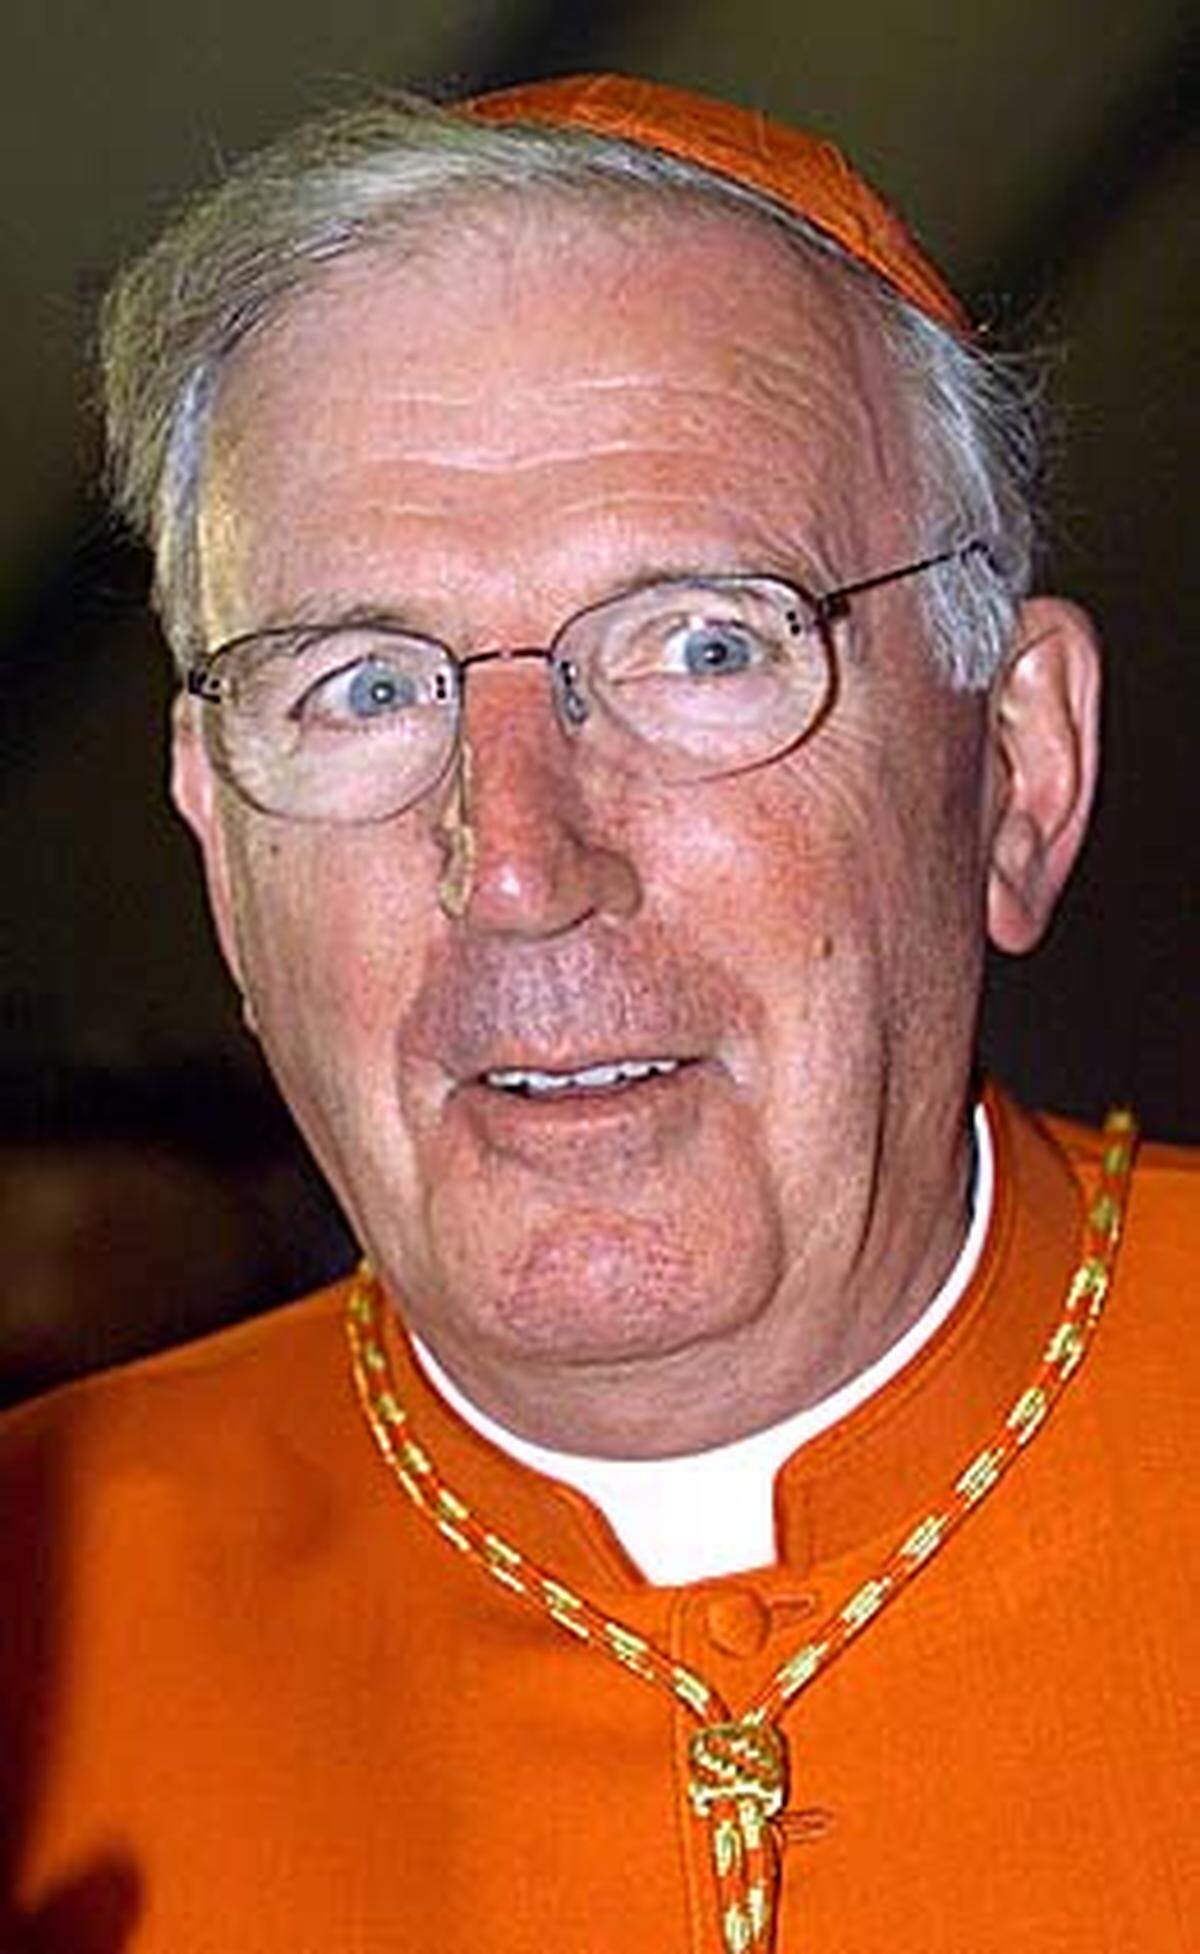 Der Londoner Kardinal Cormac Murphy-O'Connor räumt Fehler ein: Er habe es in einer früheren Tätigkeit in den 1980er Jahren zugelassen, dass ein pädophiler Priester weiterarbeiten konnte. Dieser Priester war 1997 wegen des Missbrauchs von neun Jungen über einen Zeitraum von 20 Jahren zu einer Gefängnisstrafe verurteilt worden.